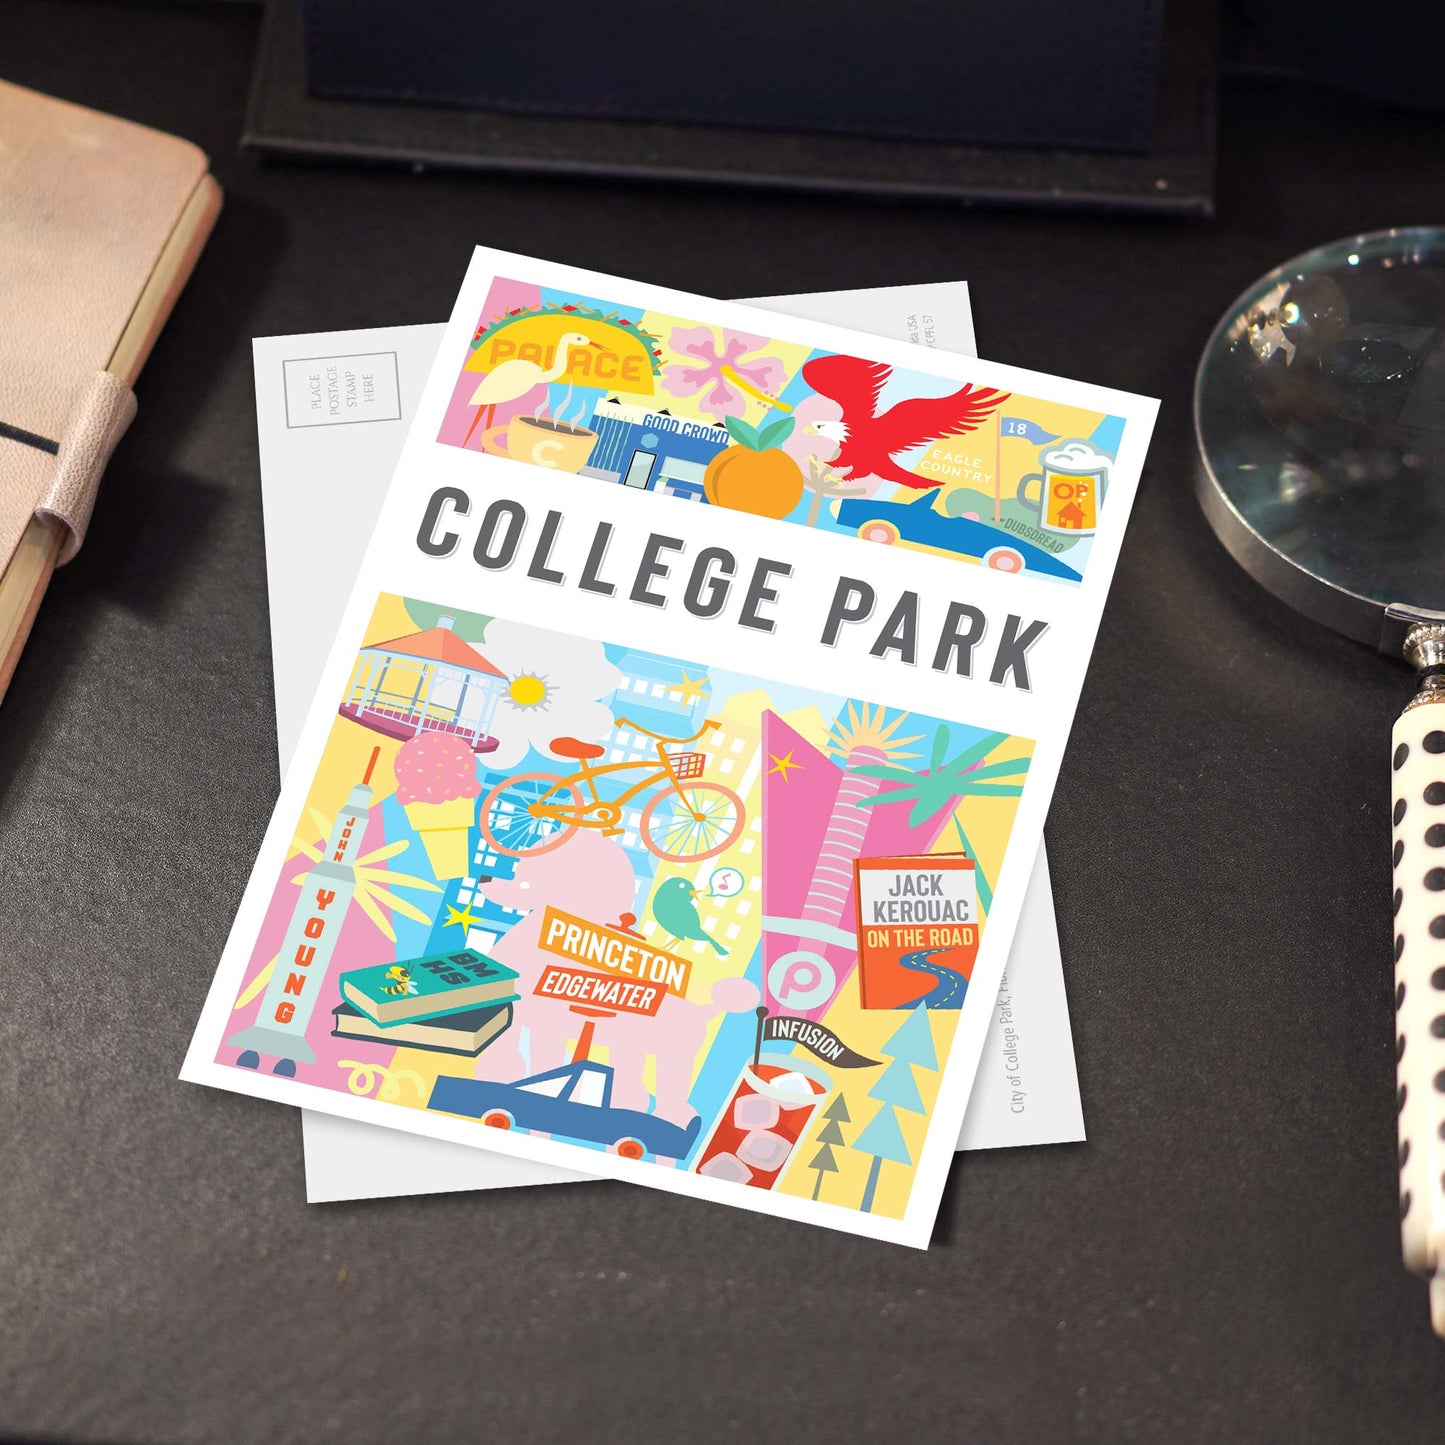 College Park FL 5x7 Montage City Series Postcard